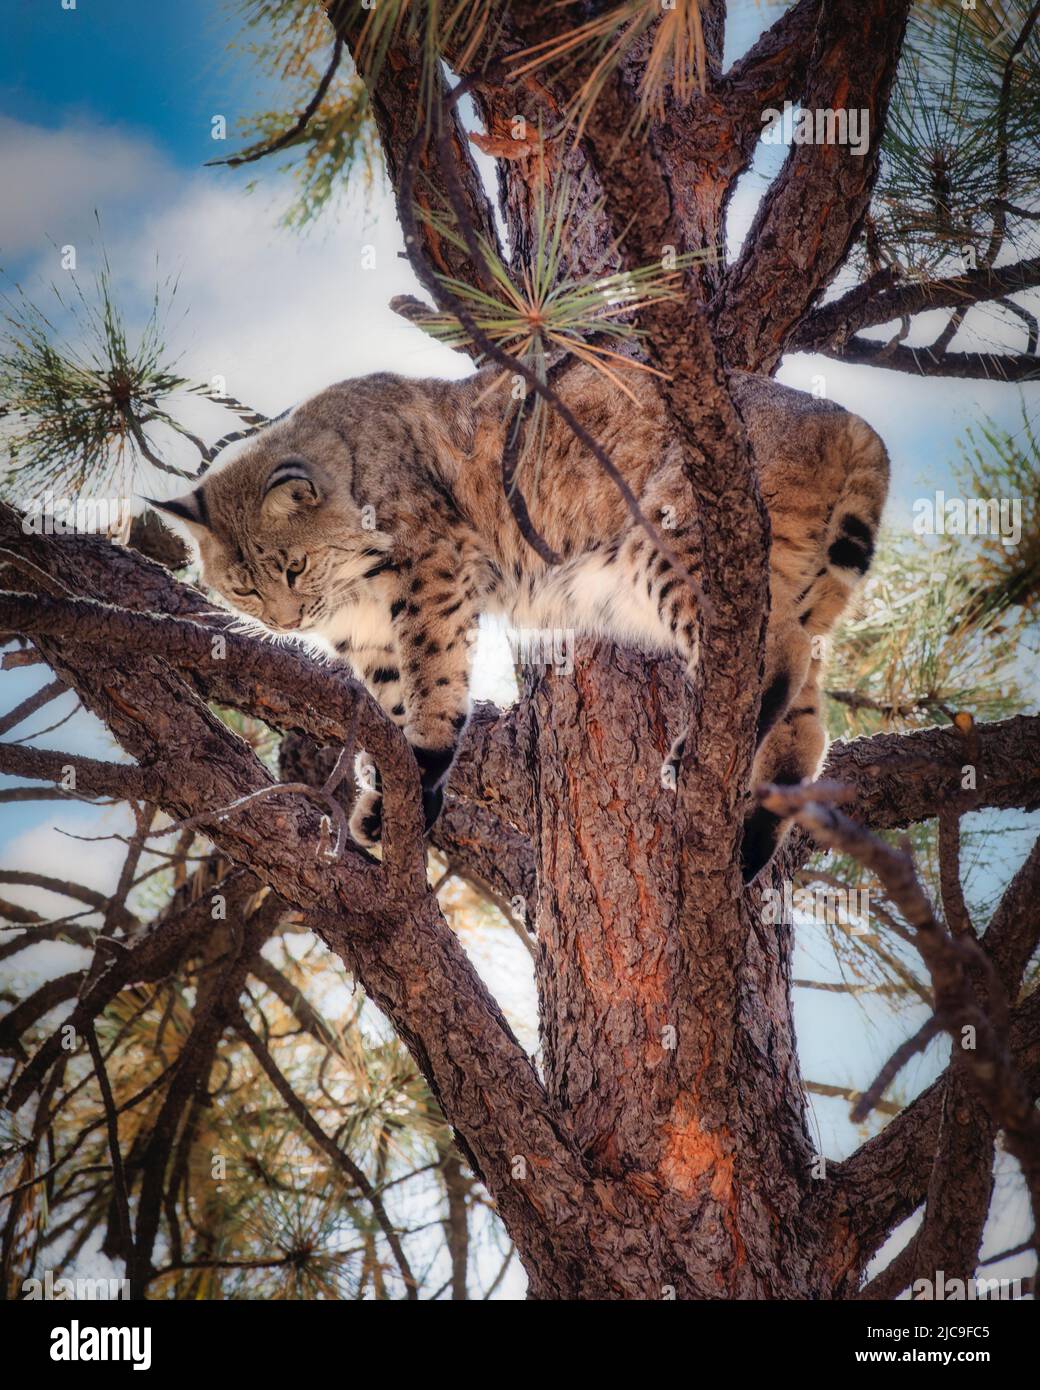 Un gato montés se mueve en un árbol en el norte de Arizona. Foto de stock